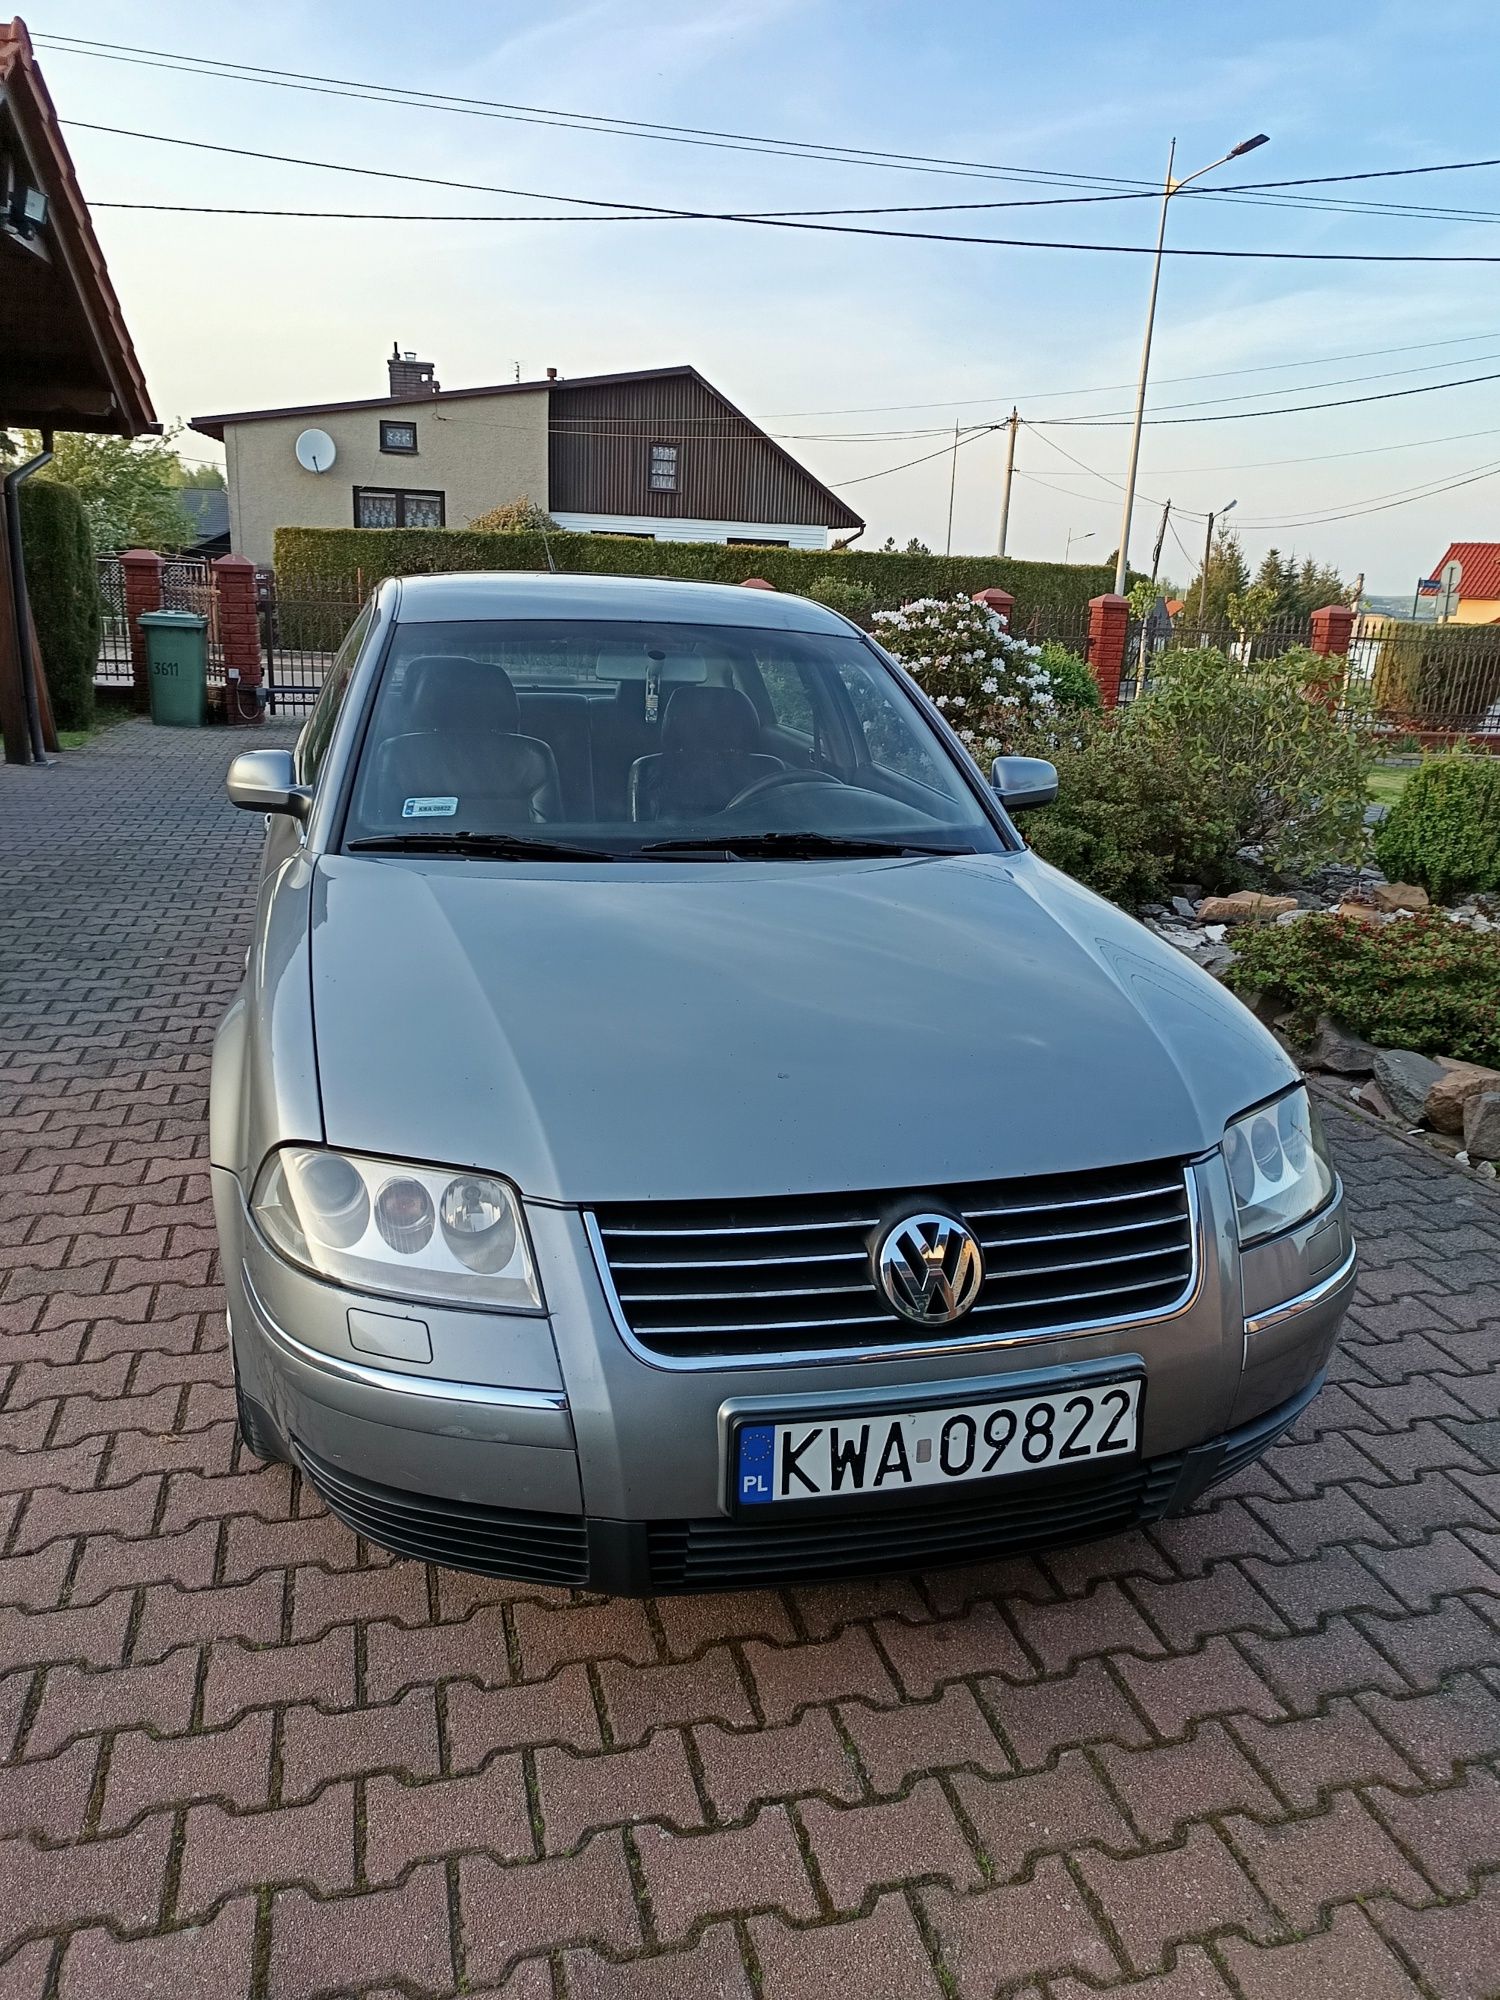 Volkswagen Passat 2001 r